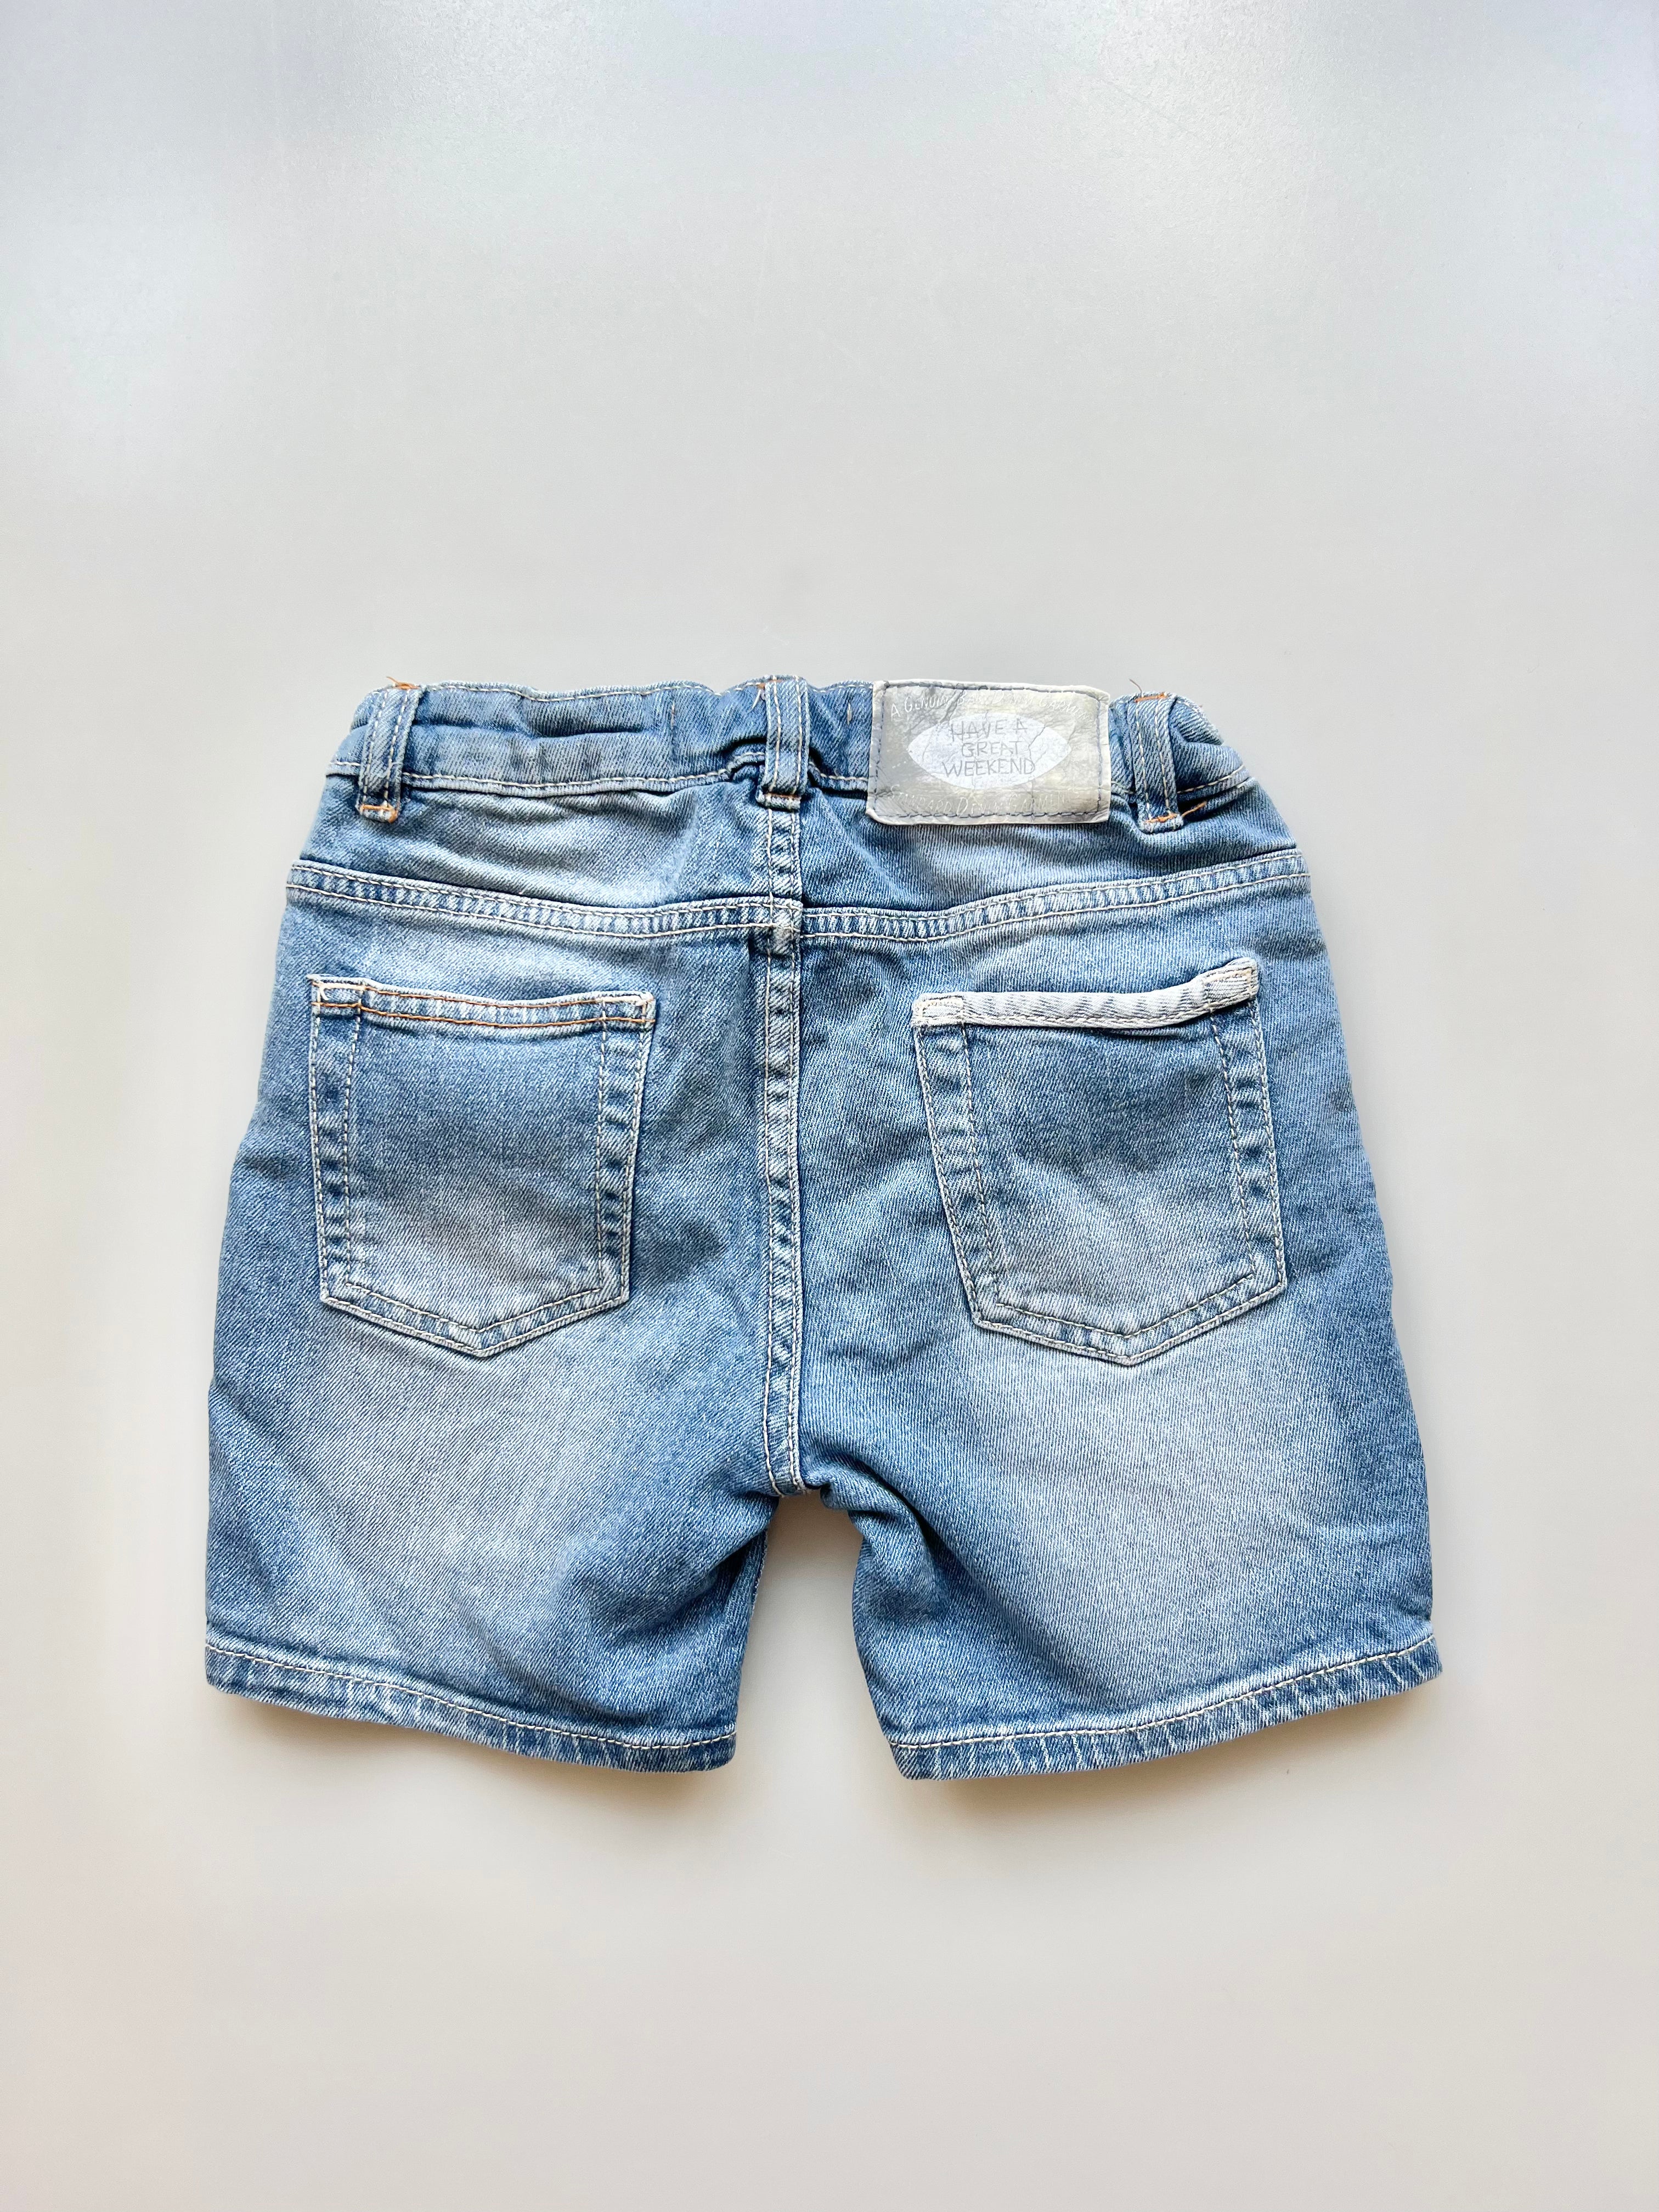 Zara Denim Shorts 18-24 Months